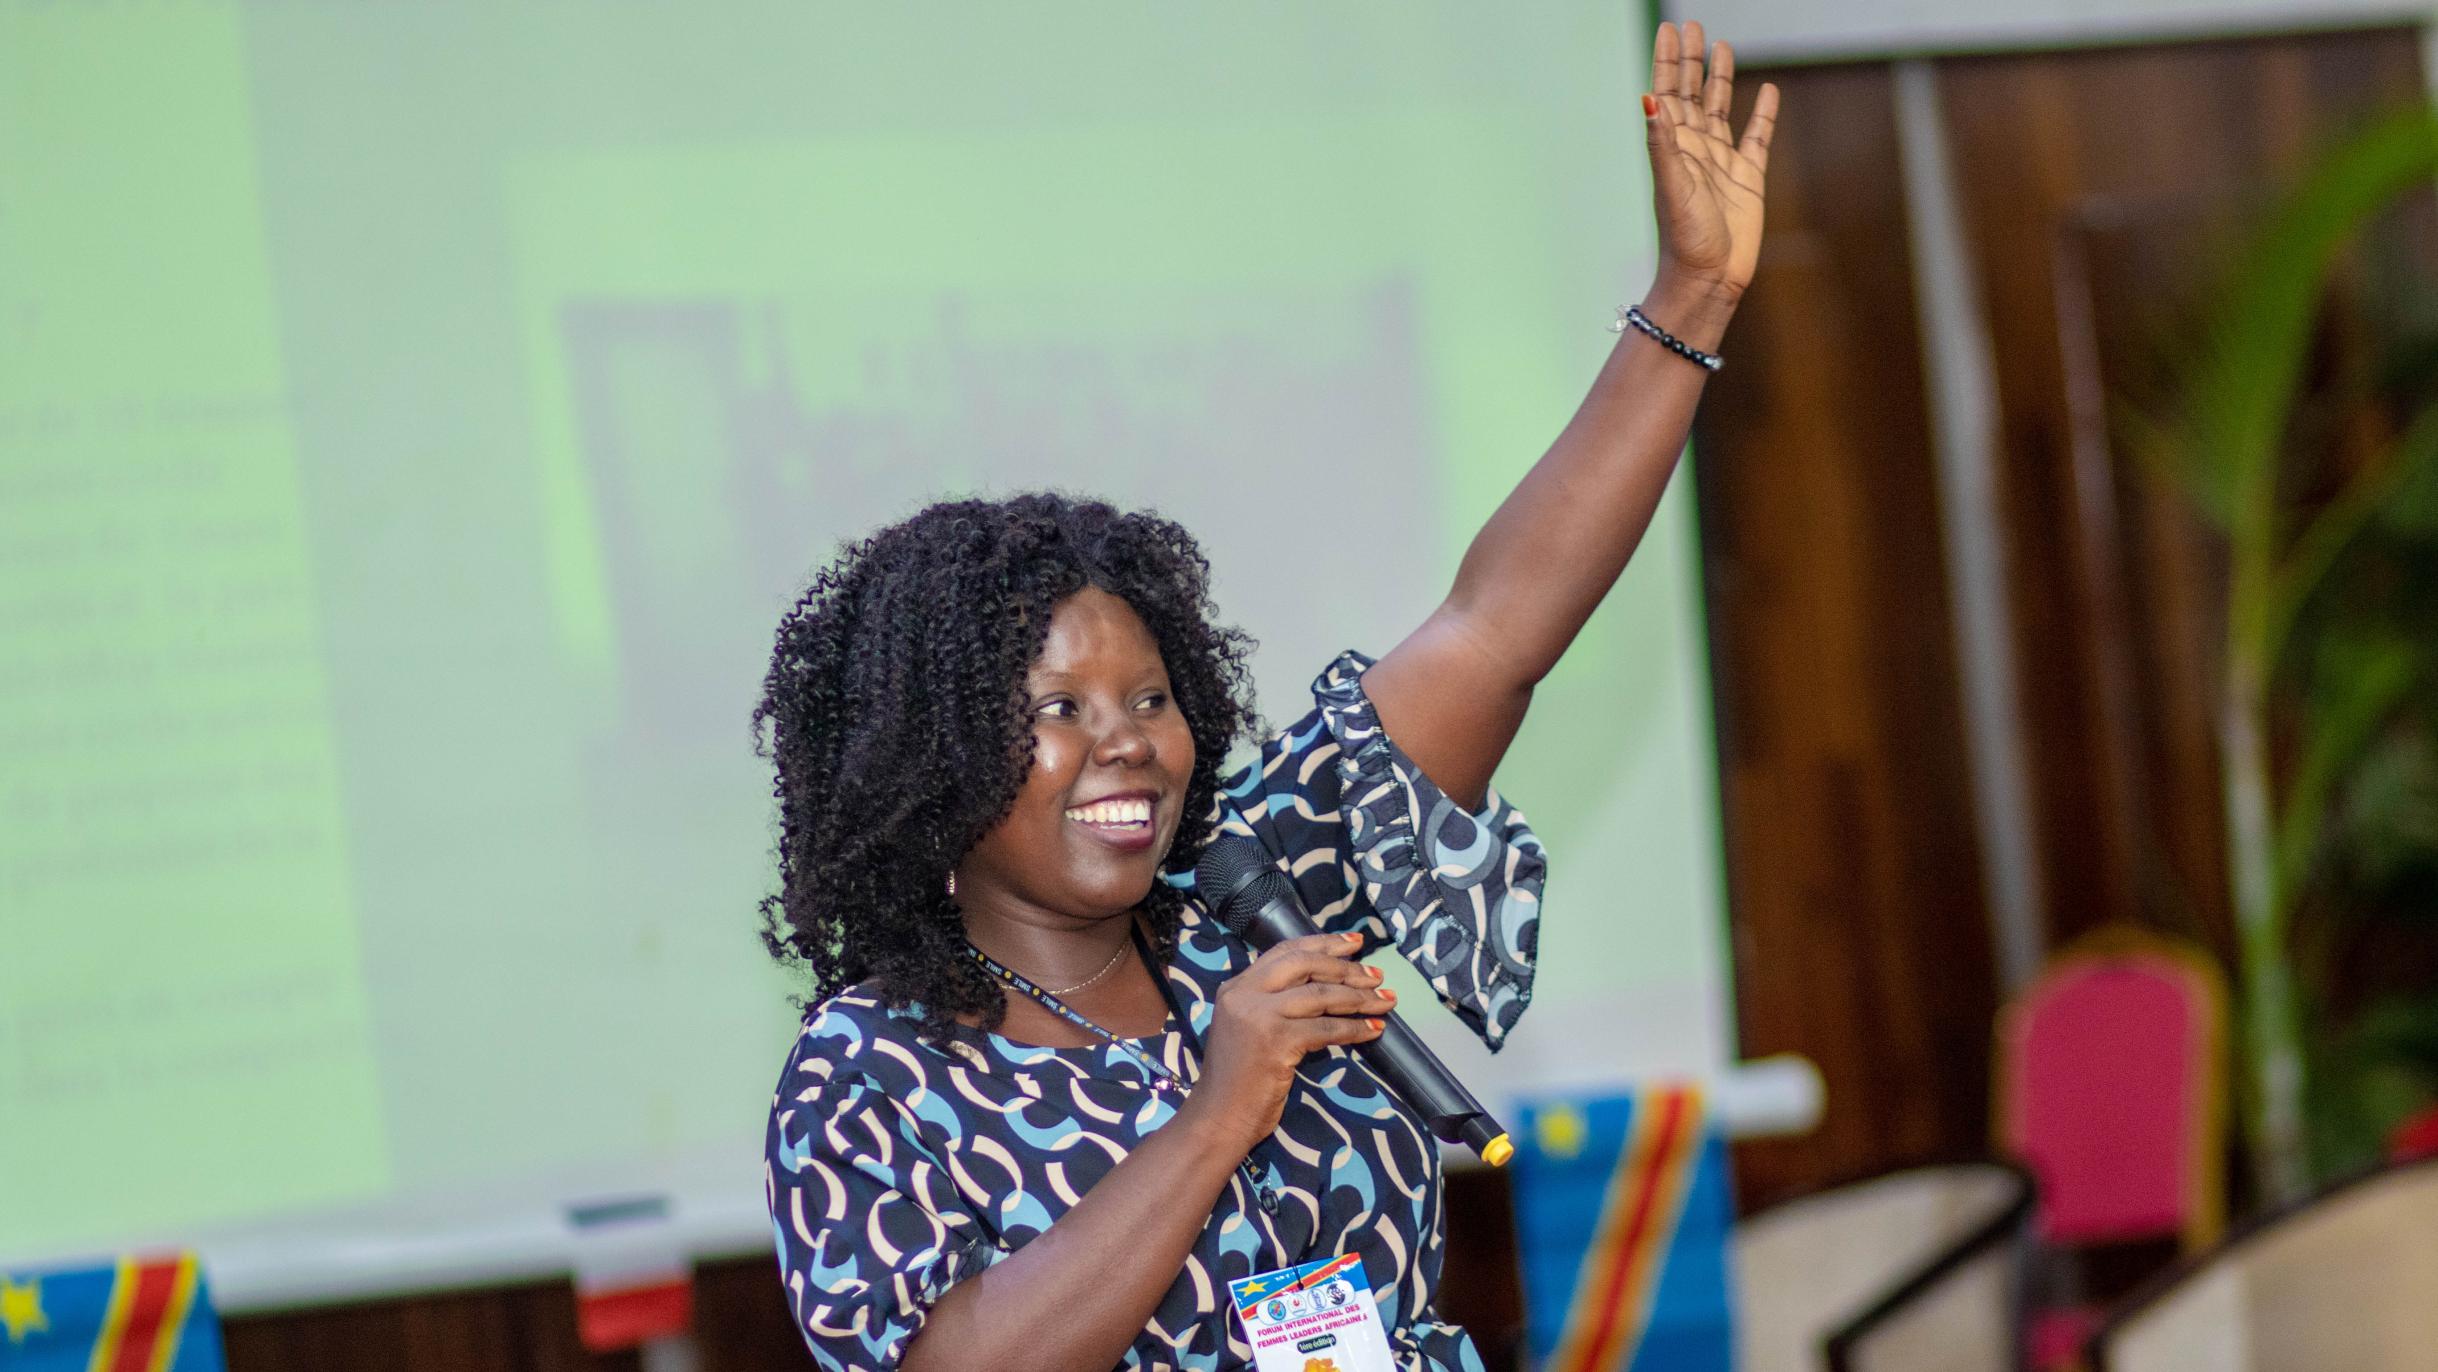 Grâce spricht auf dem Internationalen Afrikanischen Frauenforum (FIFAF) in Kinshasa (Demokratische Republik Kongo). Sie hält ein Mikrofon in der rechten Hand, mit der Linken winkt sie Zuhörenden zu und lächelt sie an. Sie trägt eine blau-gemusterte Tunika.